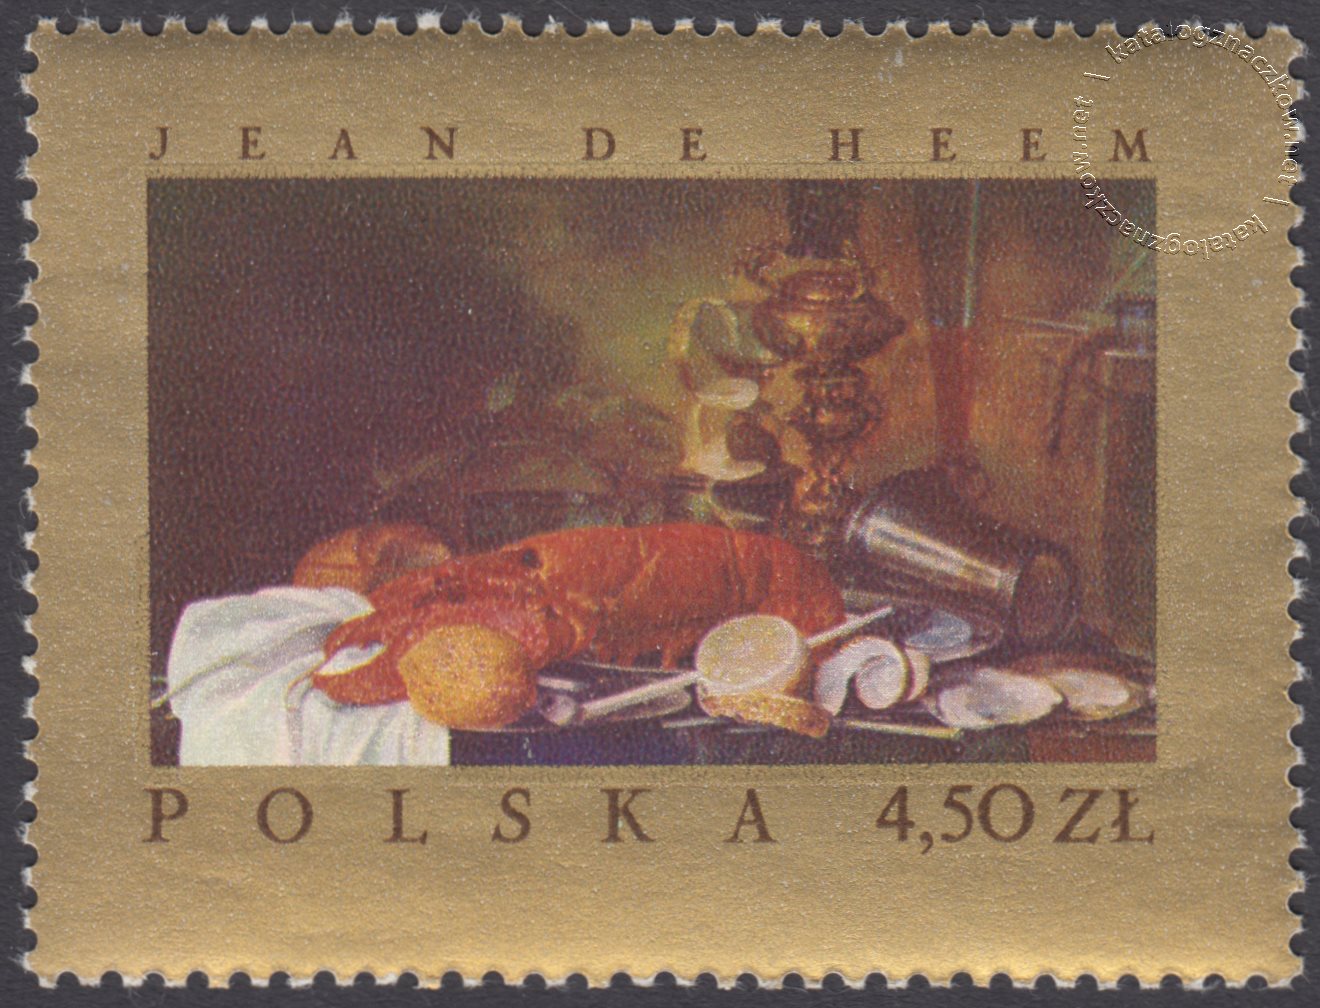 Malarstwo europejskie w muzeach polskich znaczek nr 1667